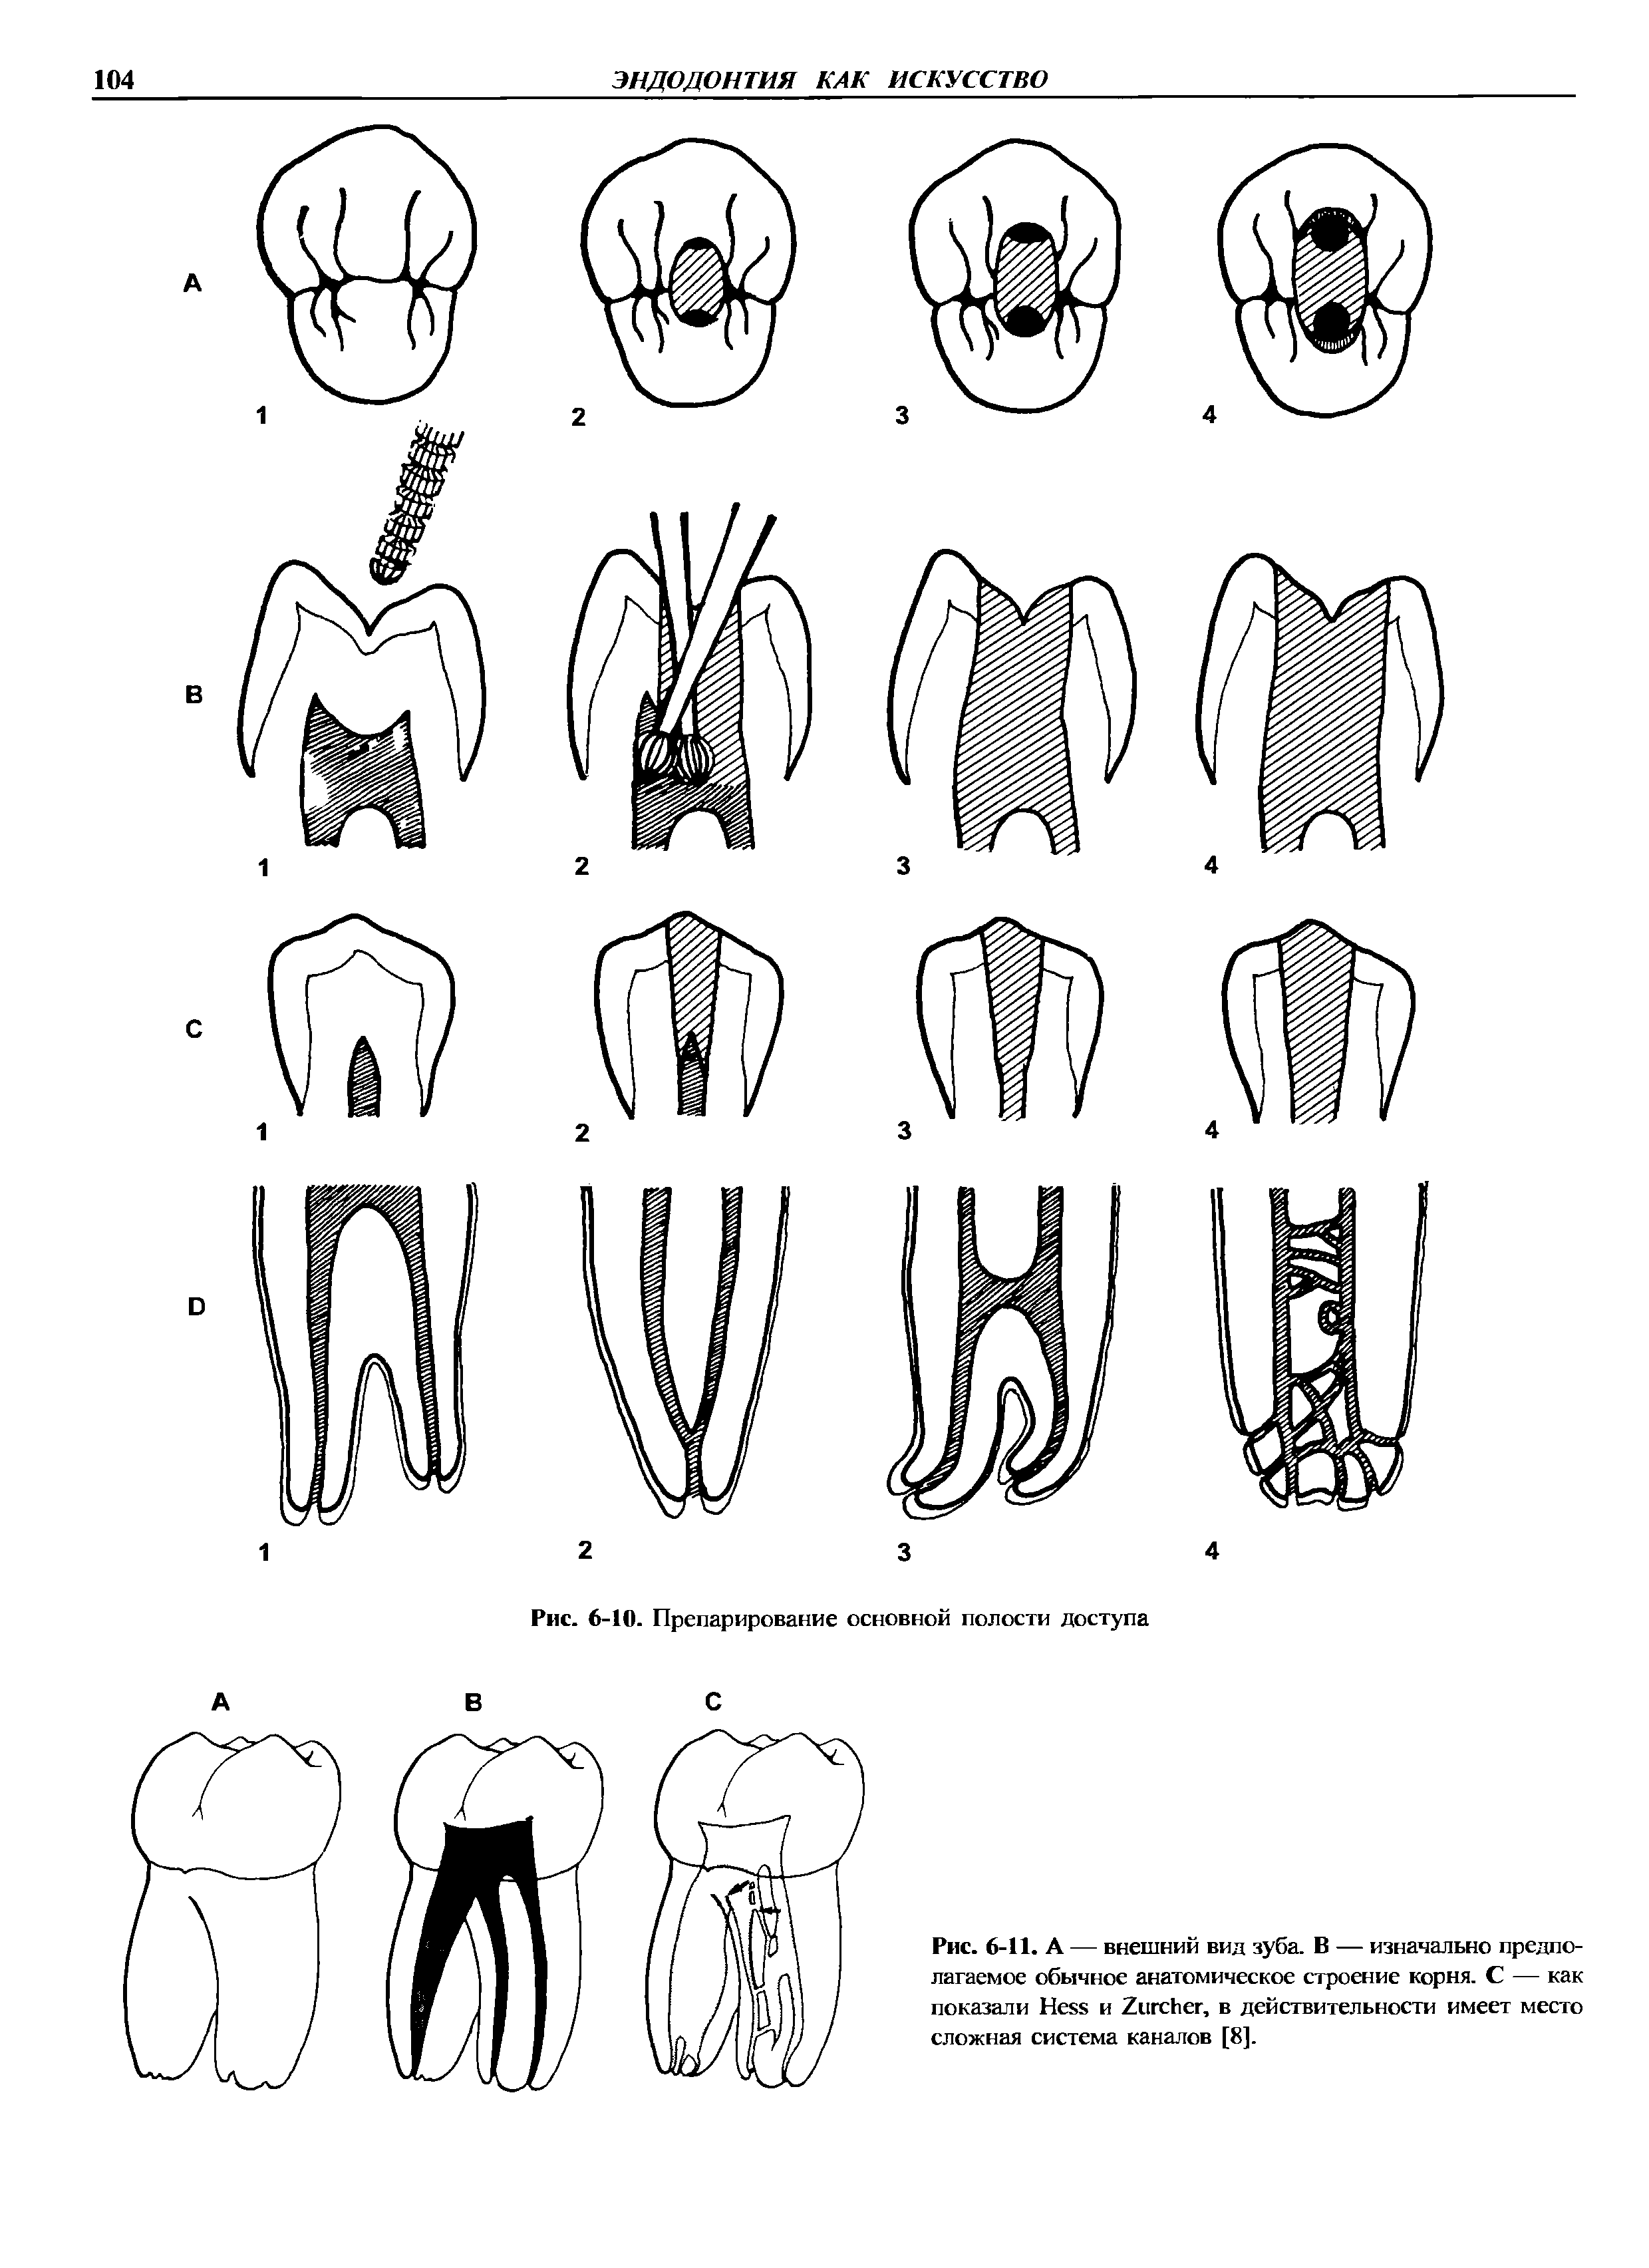 Рис. 6-11. А — внешний вид зуба. В — изначально предполагаемое обычное анатомическое строение корня. С — как показали H и Z , в действительности имеет место сложная система каналов [8].